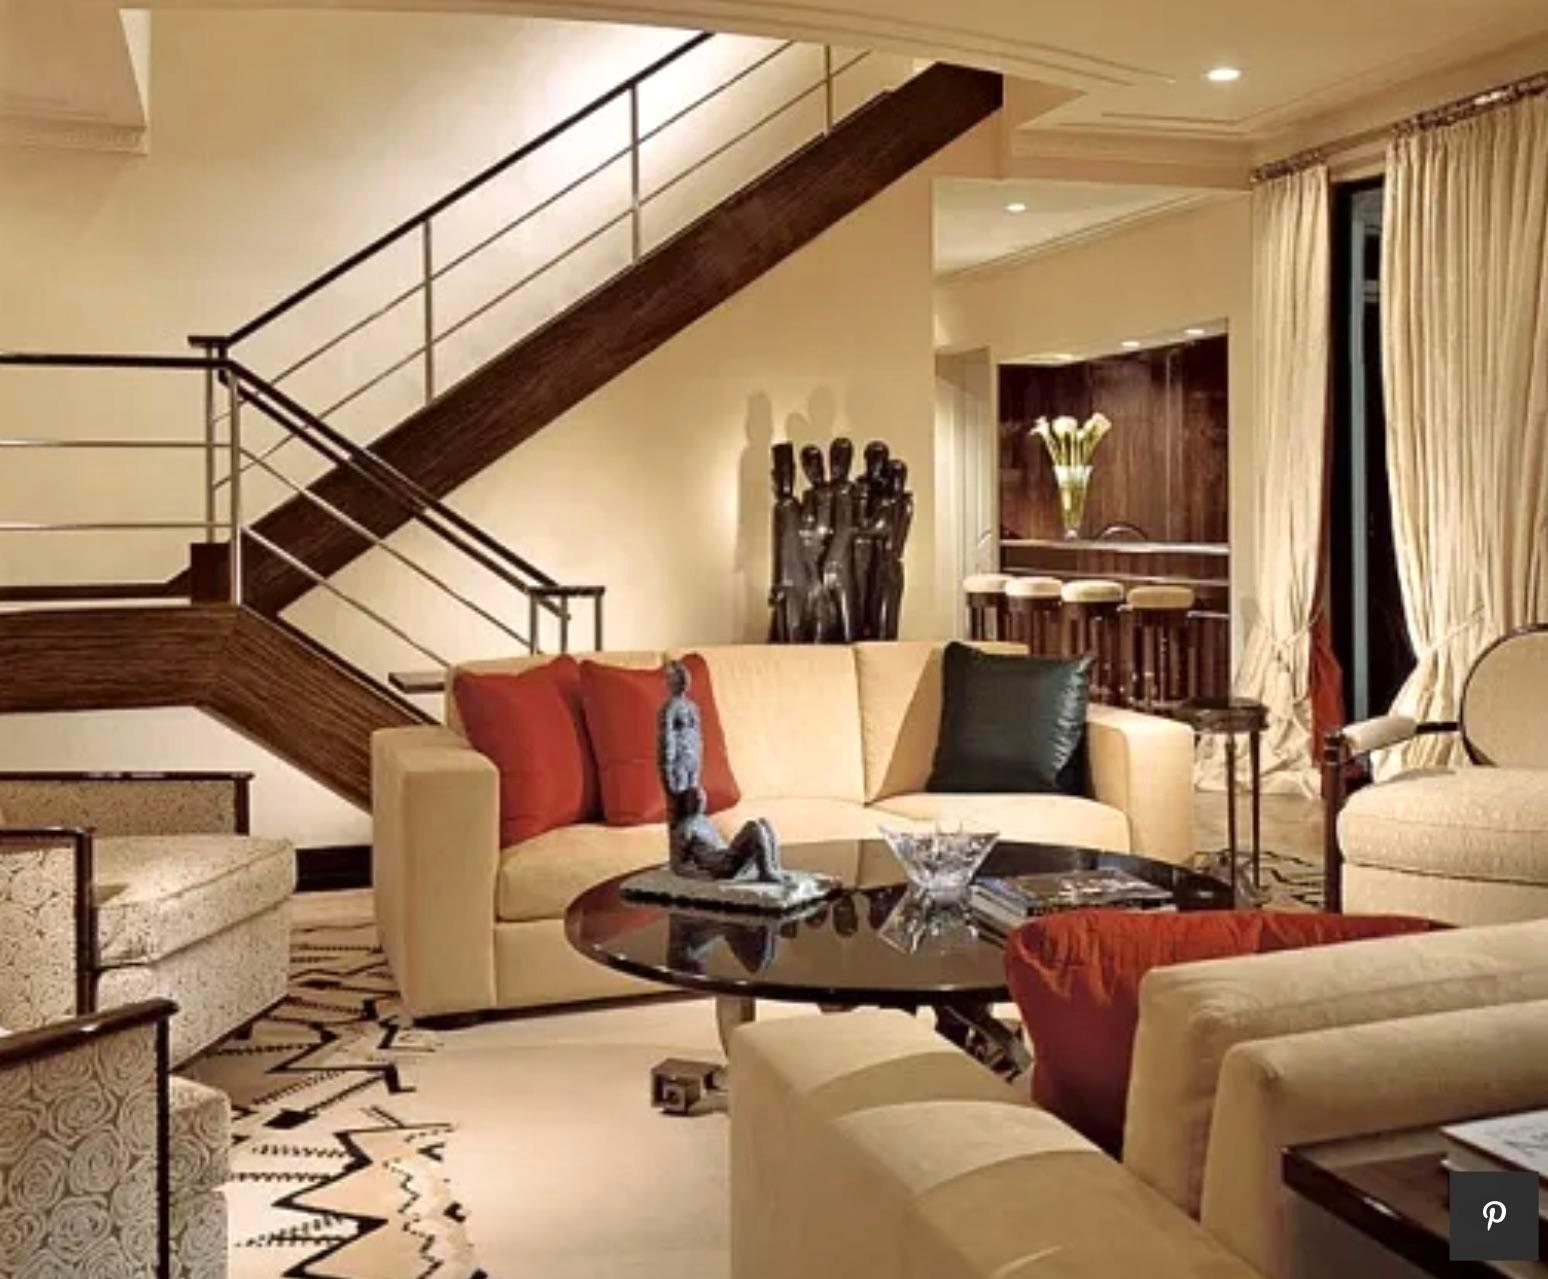 Ein spektakuläres Paar von Vintage Deco Lounge Stühlen. Der ikonische Geoffrey Bradfield hat es nach Maß gebaut und in einem außergewöhnlichen Anwesen in Palm Beach installiert. Erschienen in der November-Ausgabe 2006 von Architectural Digest. Siehe